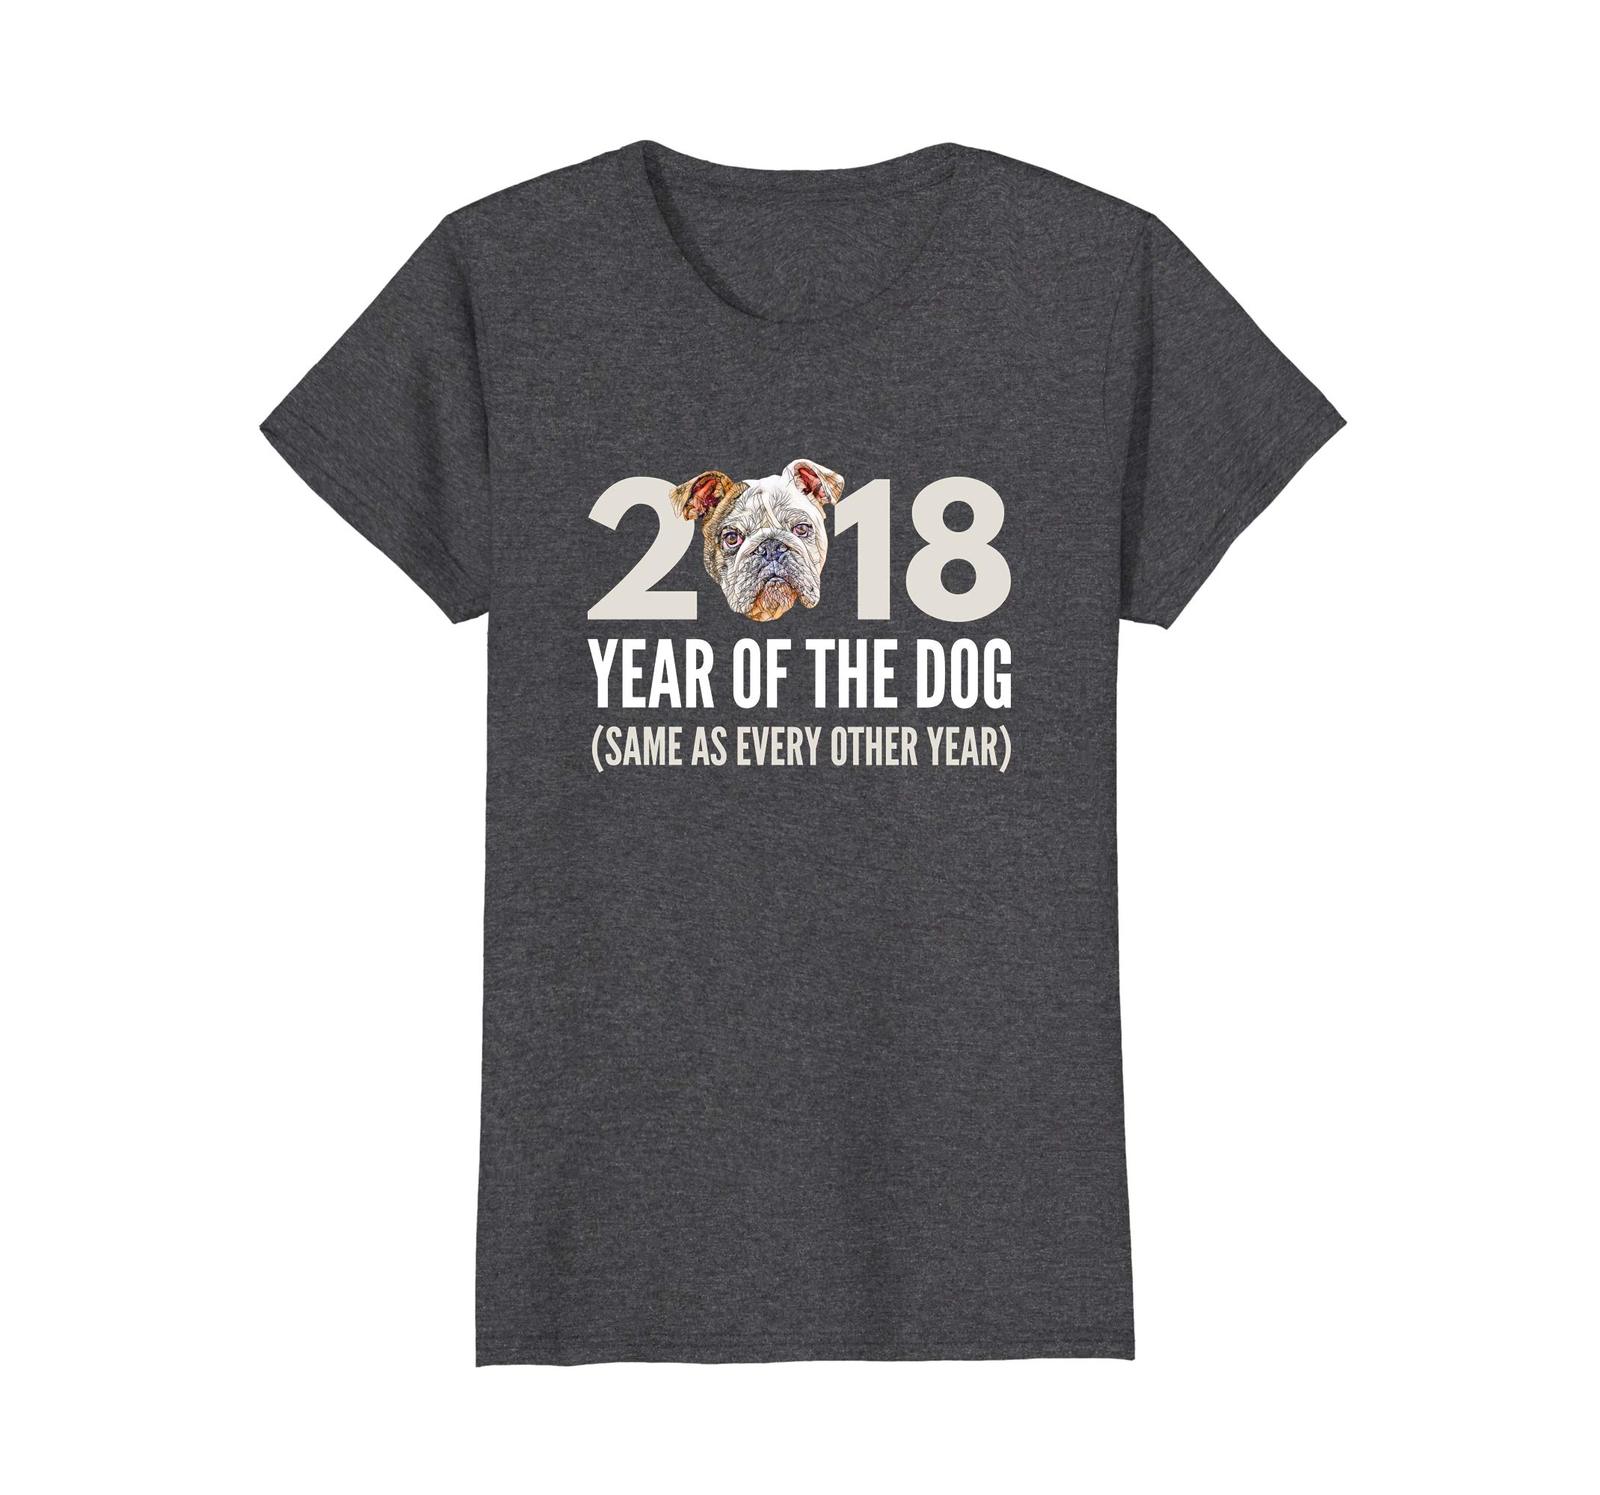 Dog Fashion - 2018 Year of the Dog Shirt - English Bulldog T-Shirt Wowen